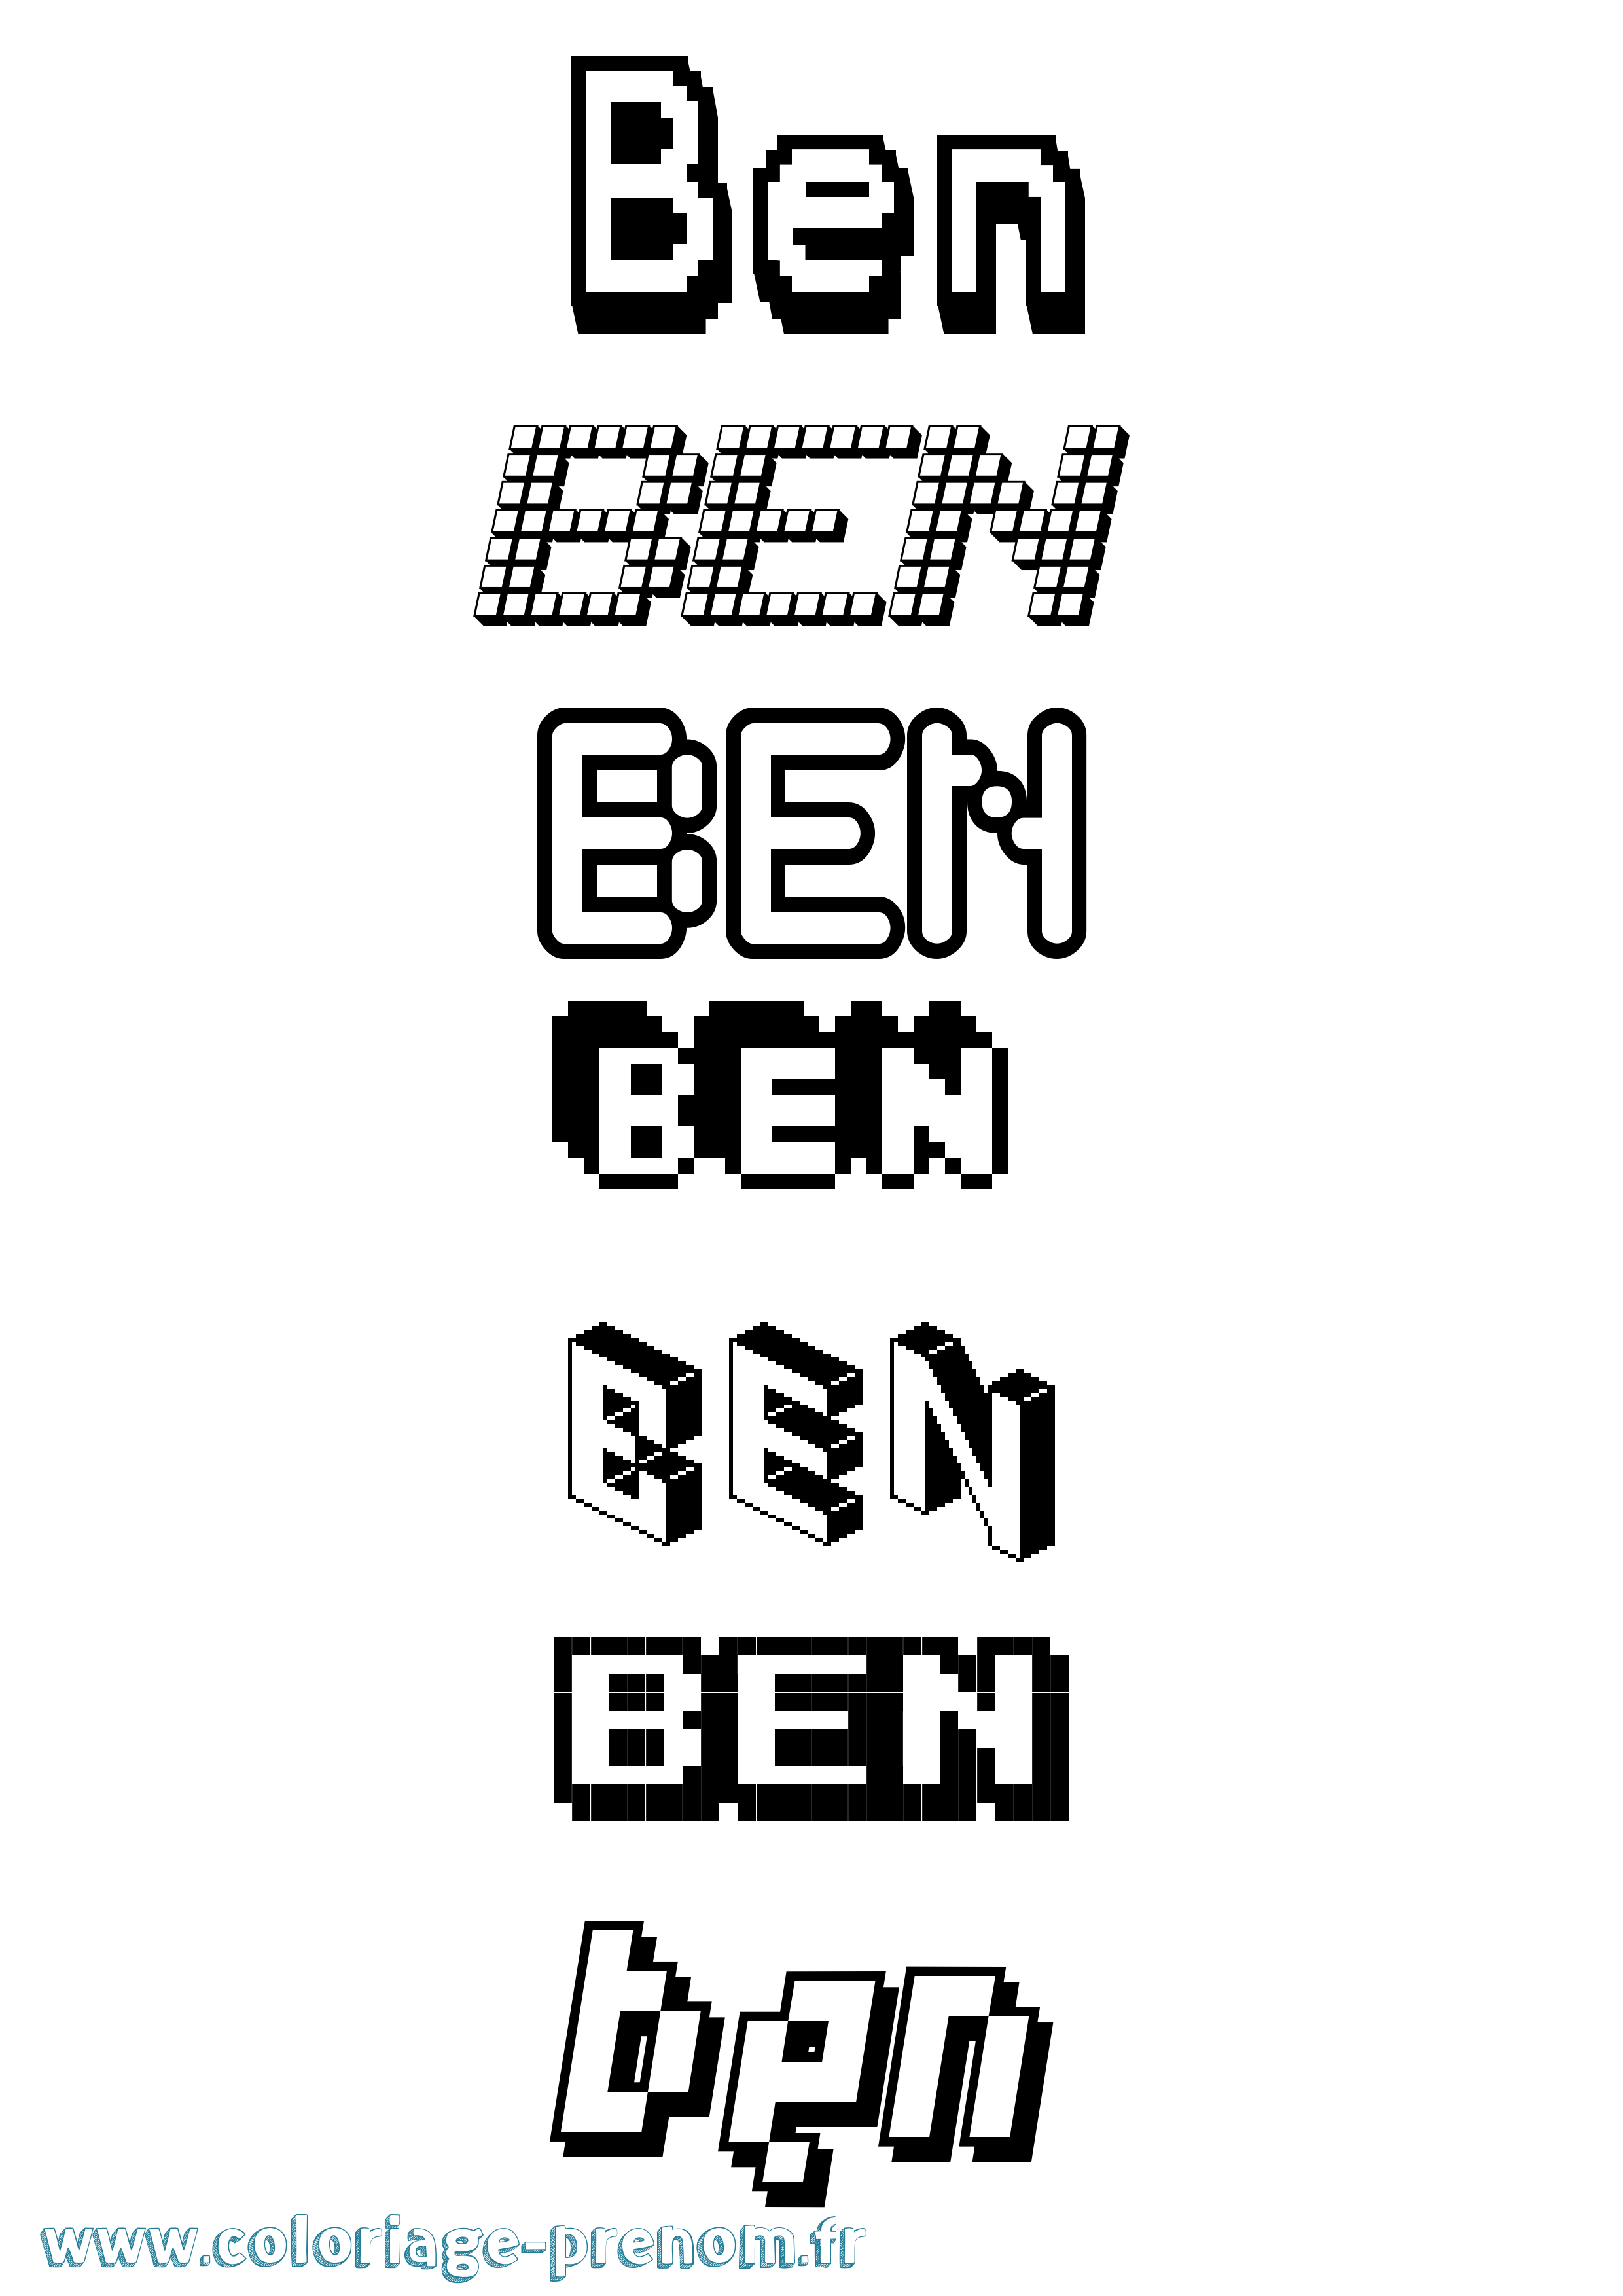 Coloriage prénom Ben Pixel